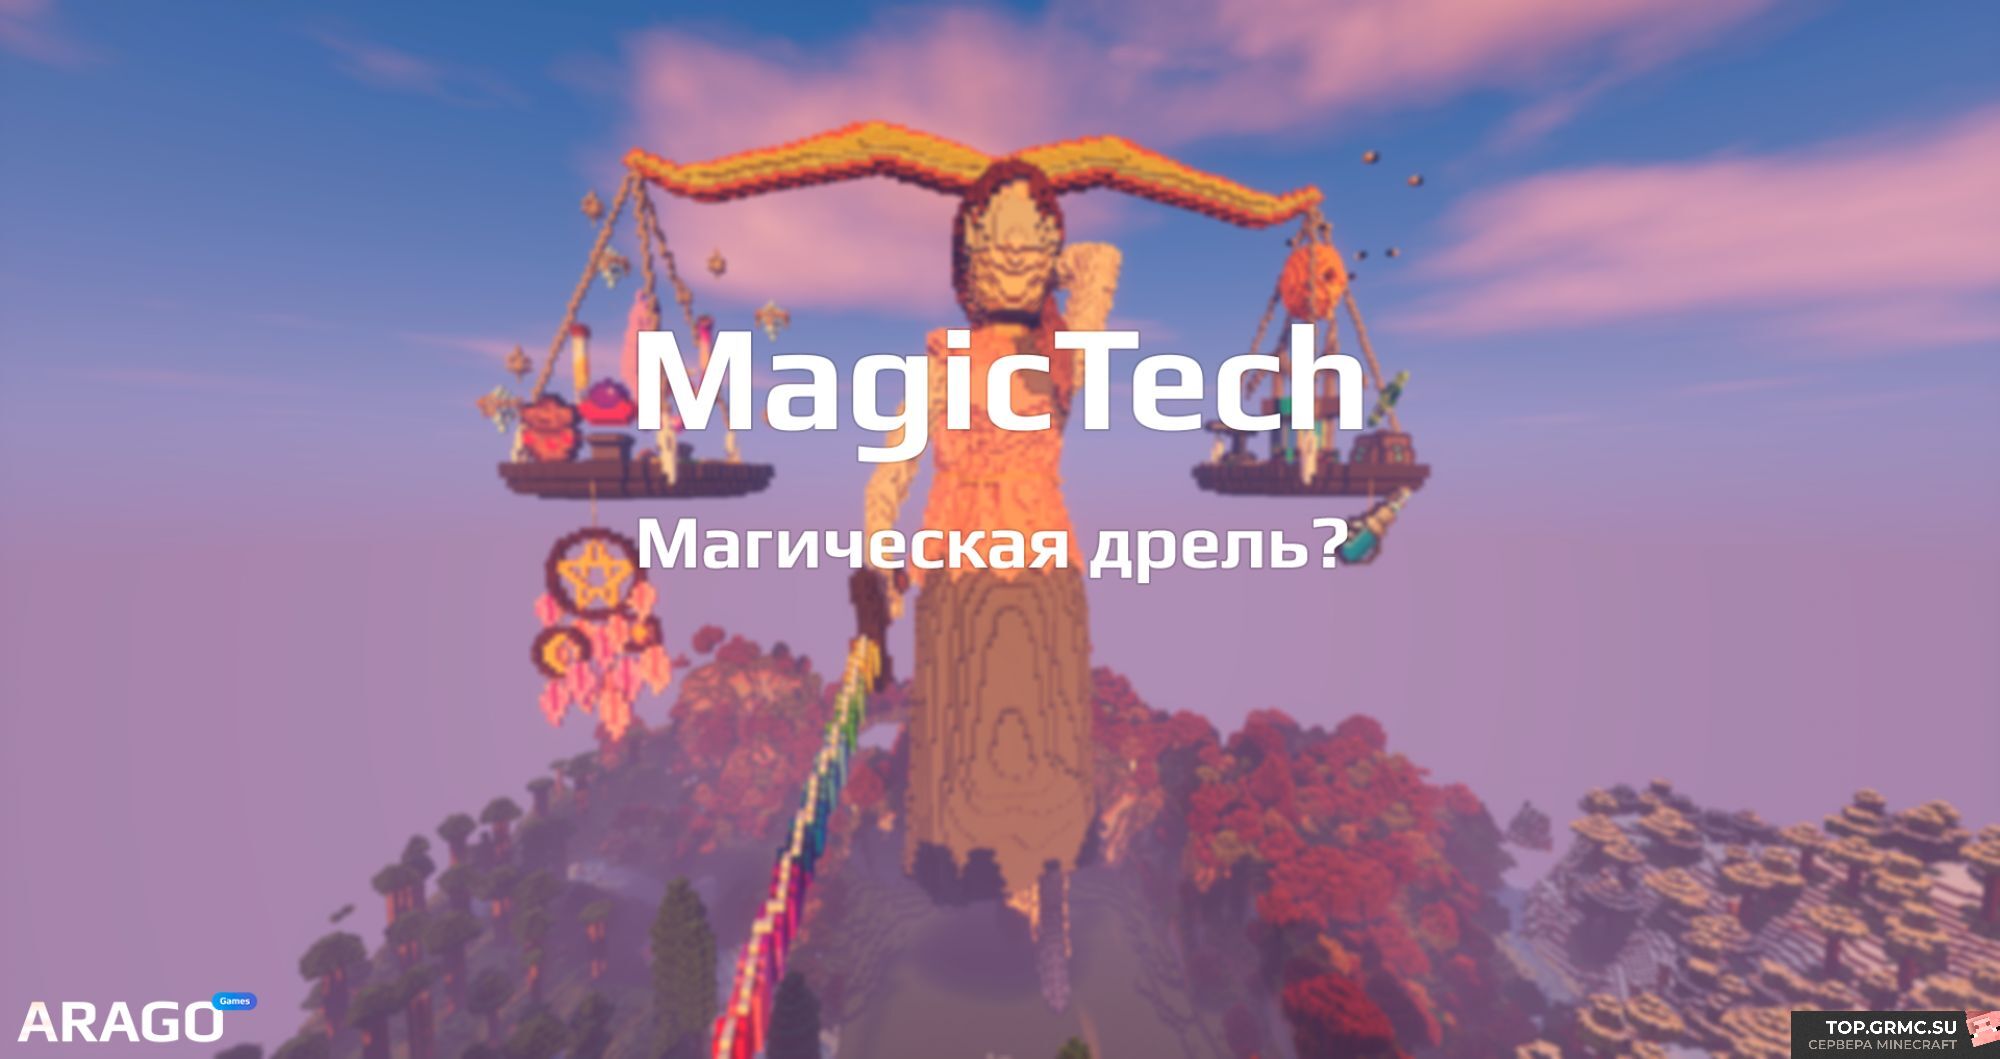 Фото на сервере ARAGO - MagicRPG